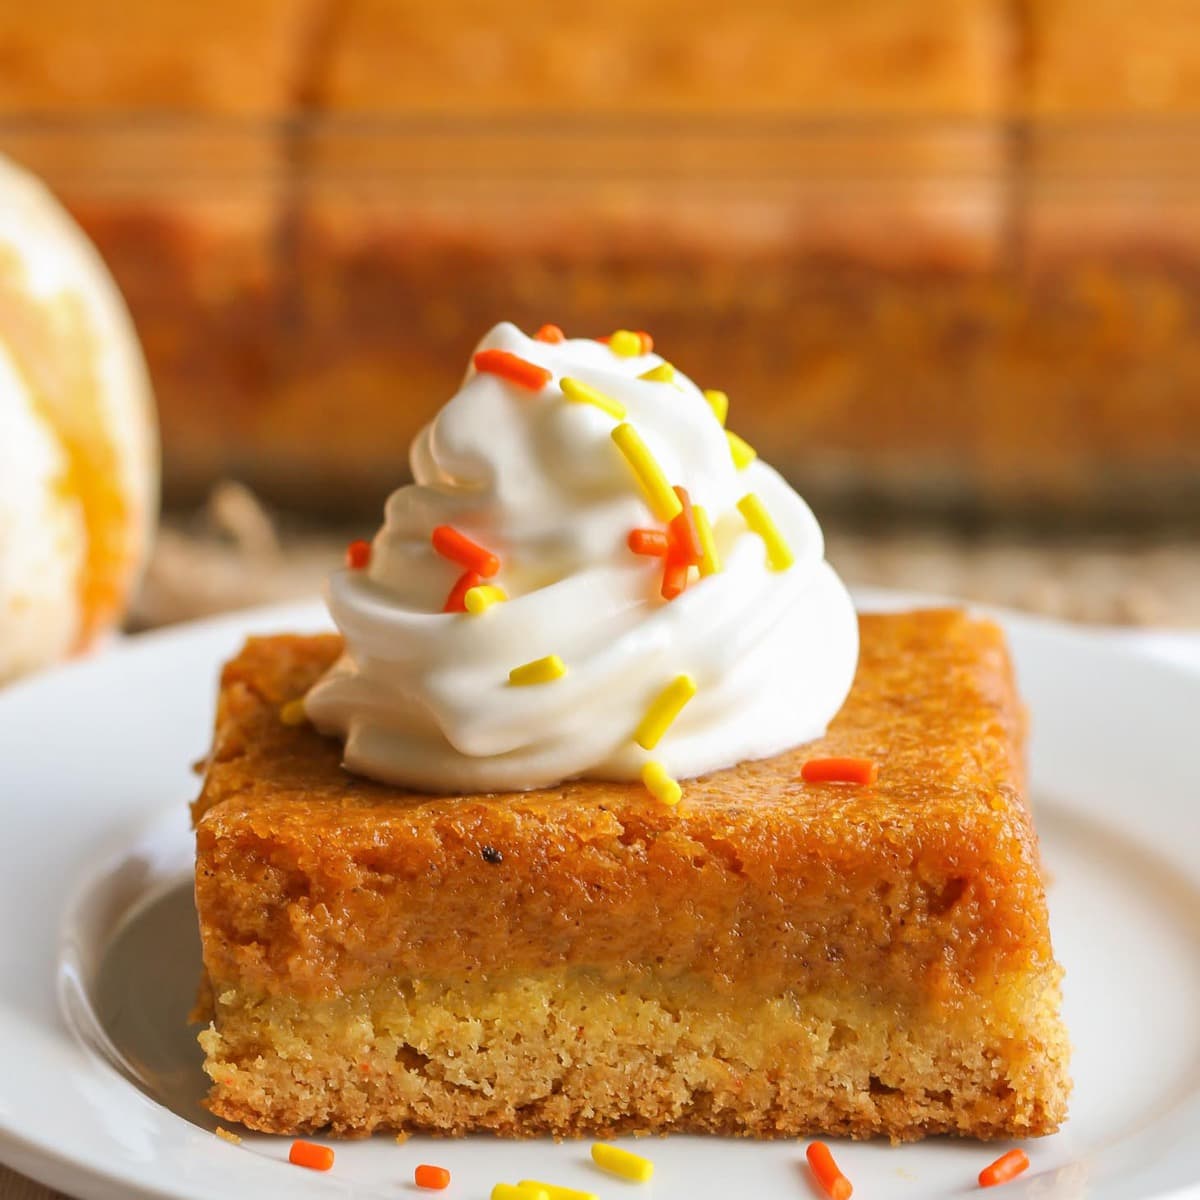 Fall dessert recipes - slice of pumpkin gooey butter cake on a plate.